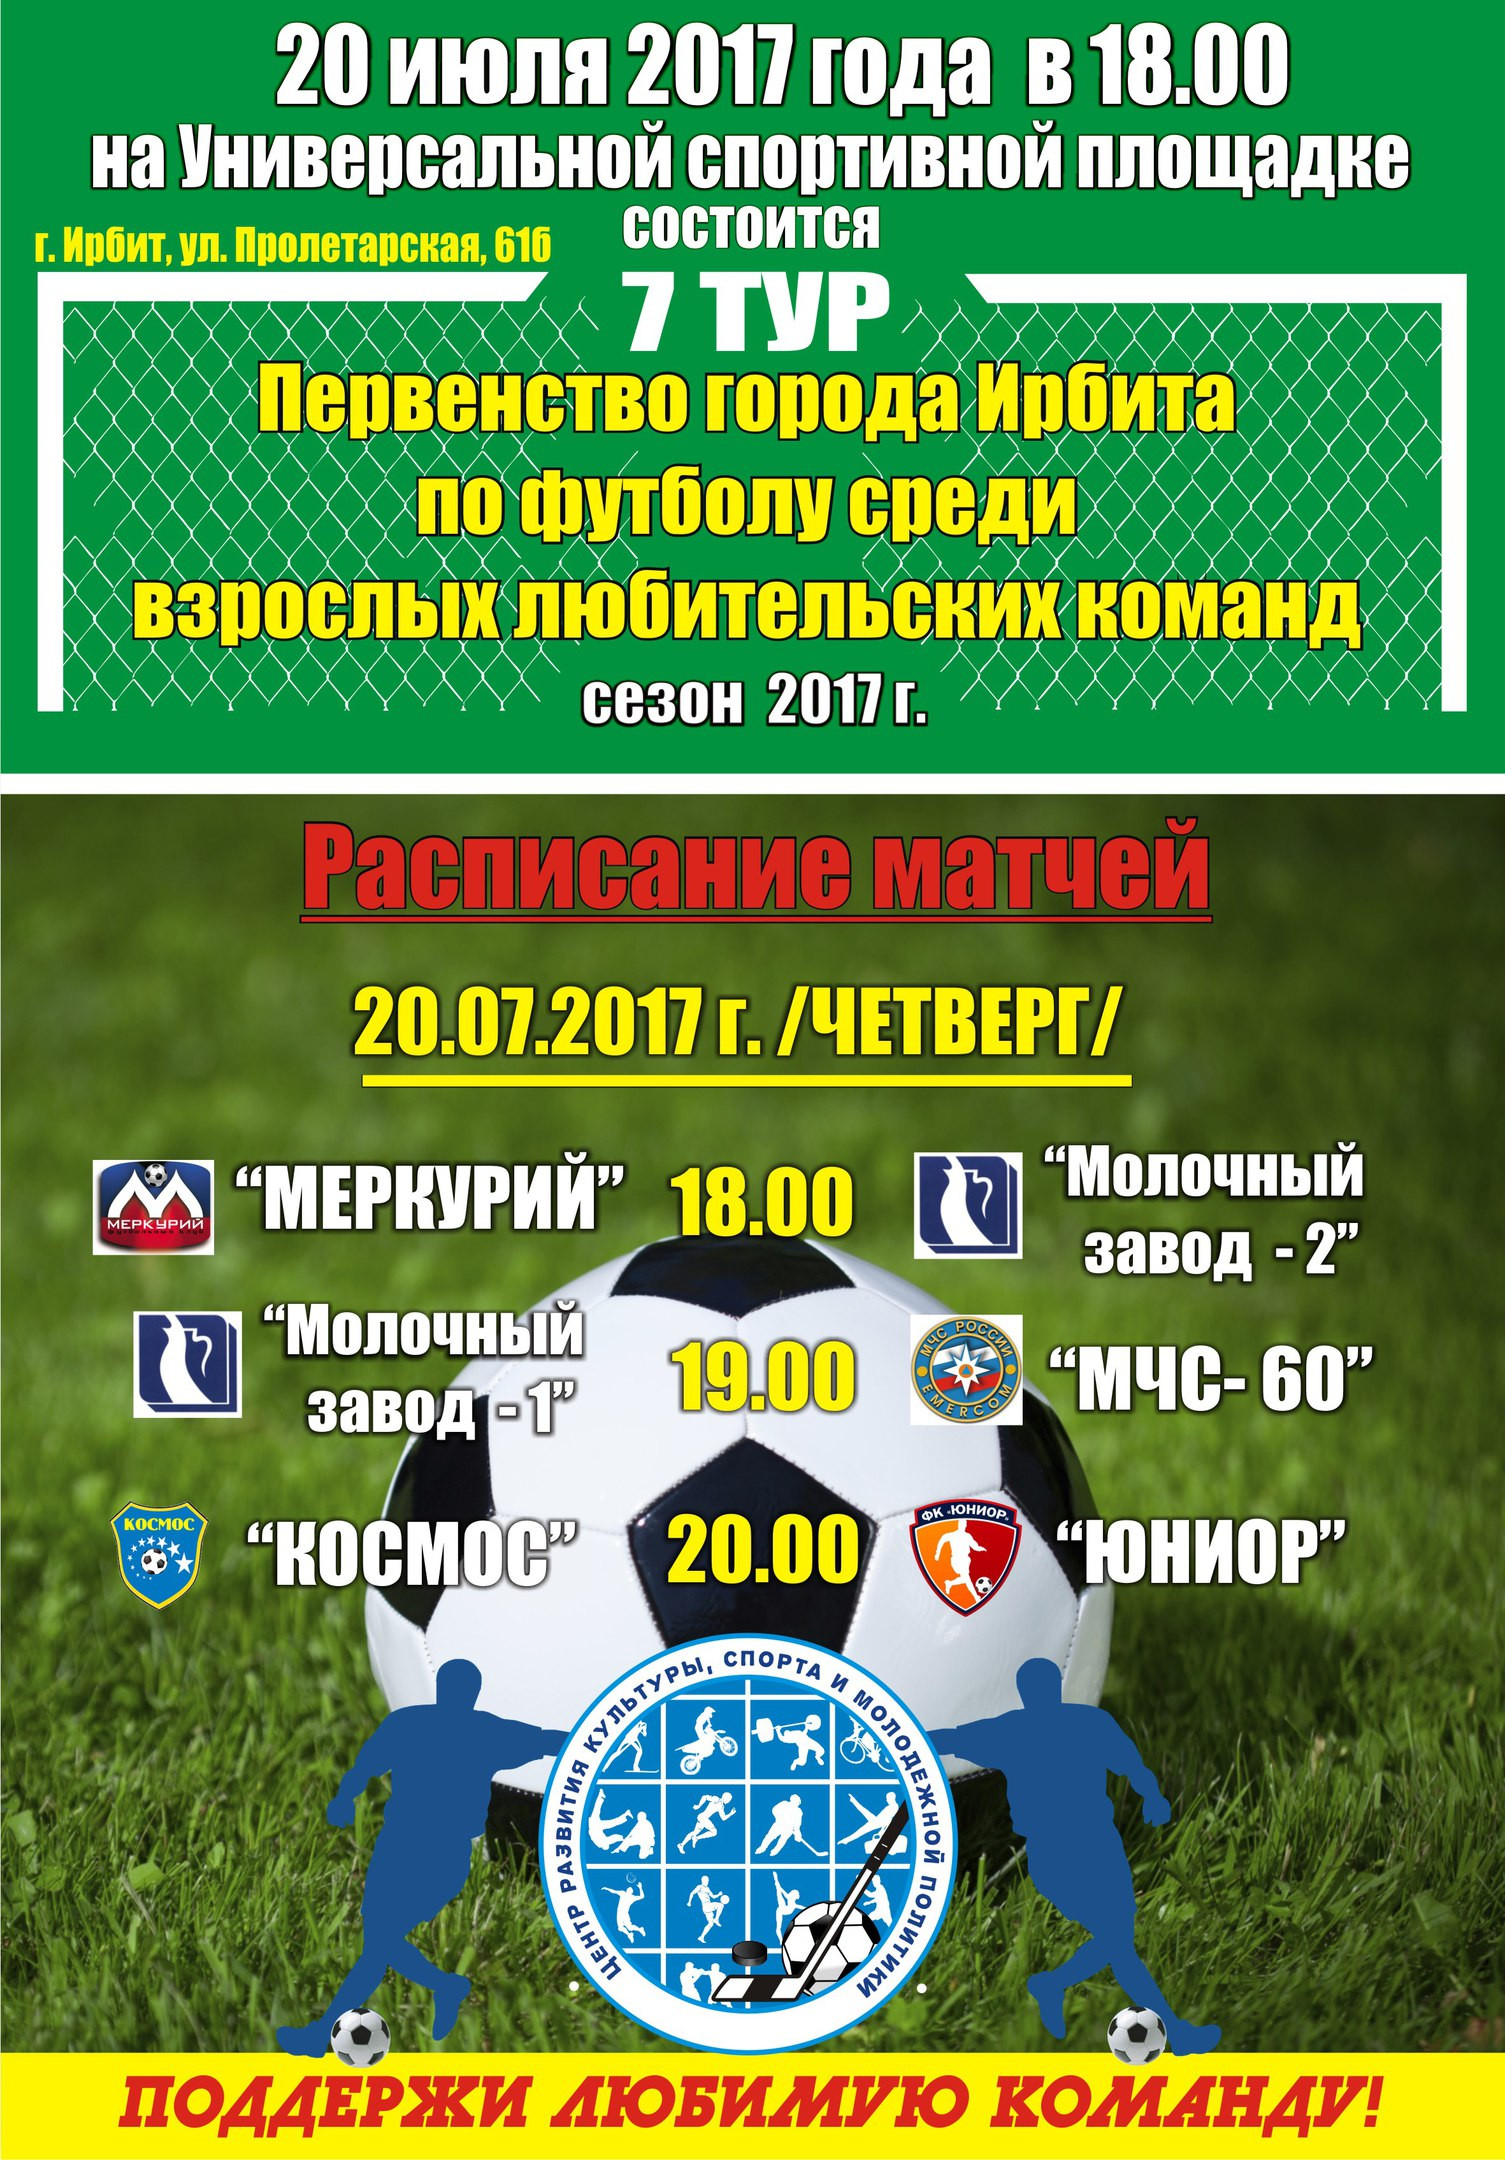 7-й тур Первенства города Ирбита по футболу среди взрослых любительских команд